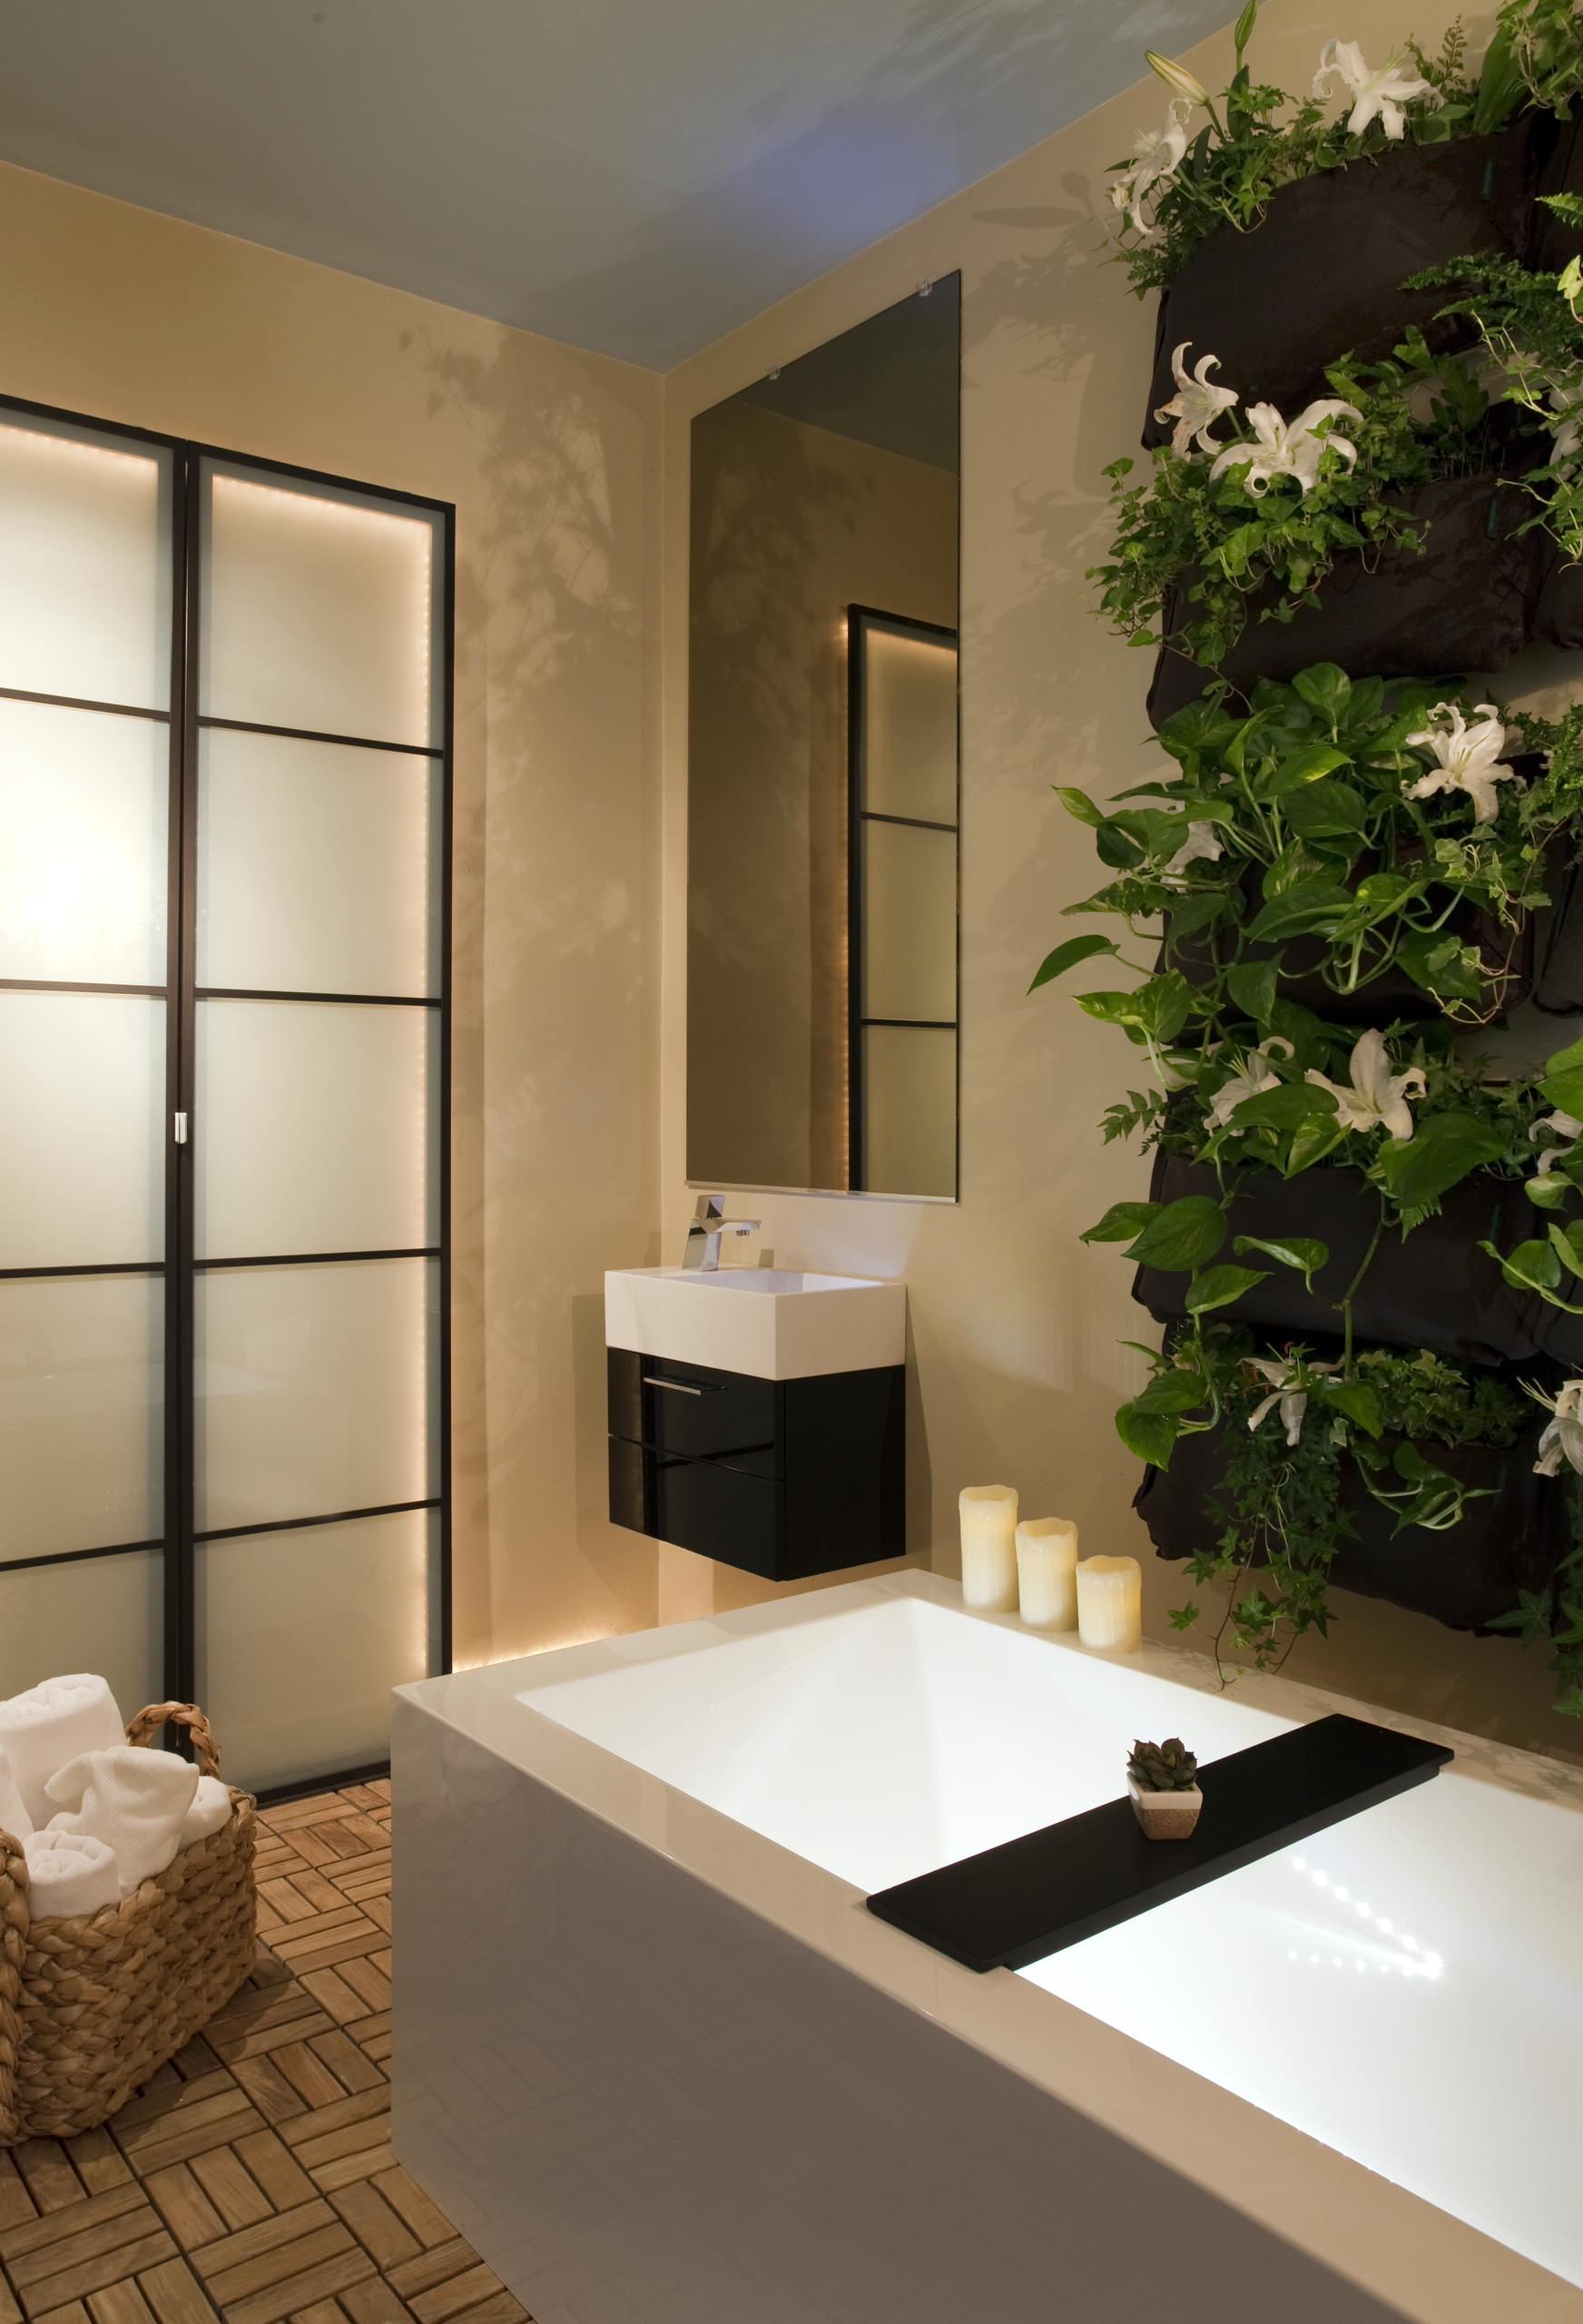 Malá koupelna na razítku Wellenes: plná radosti a elitářského životního stylu na 8 m²